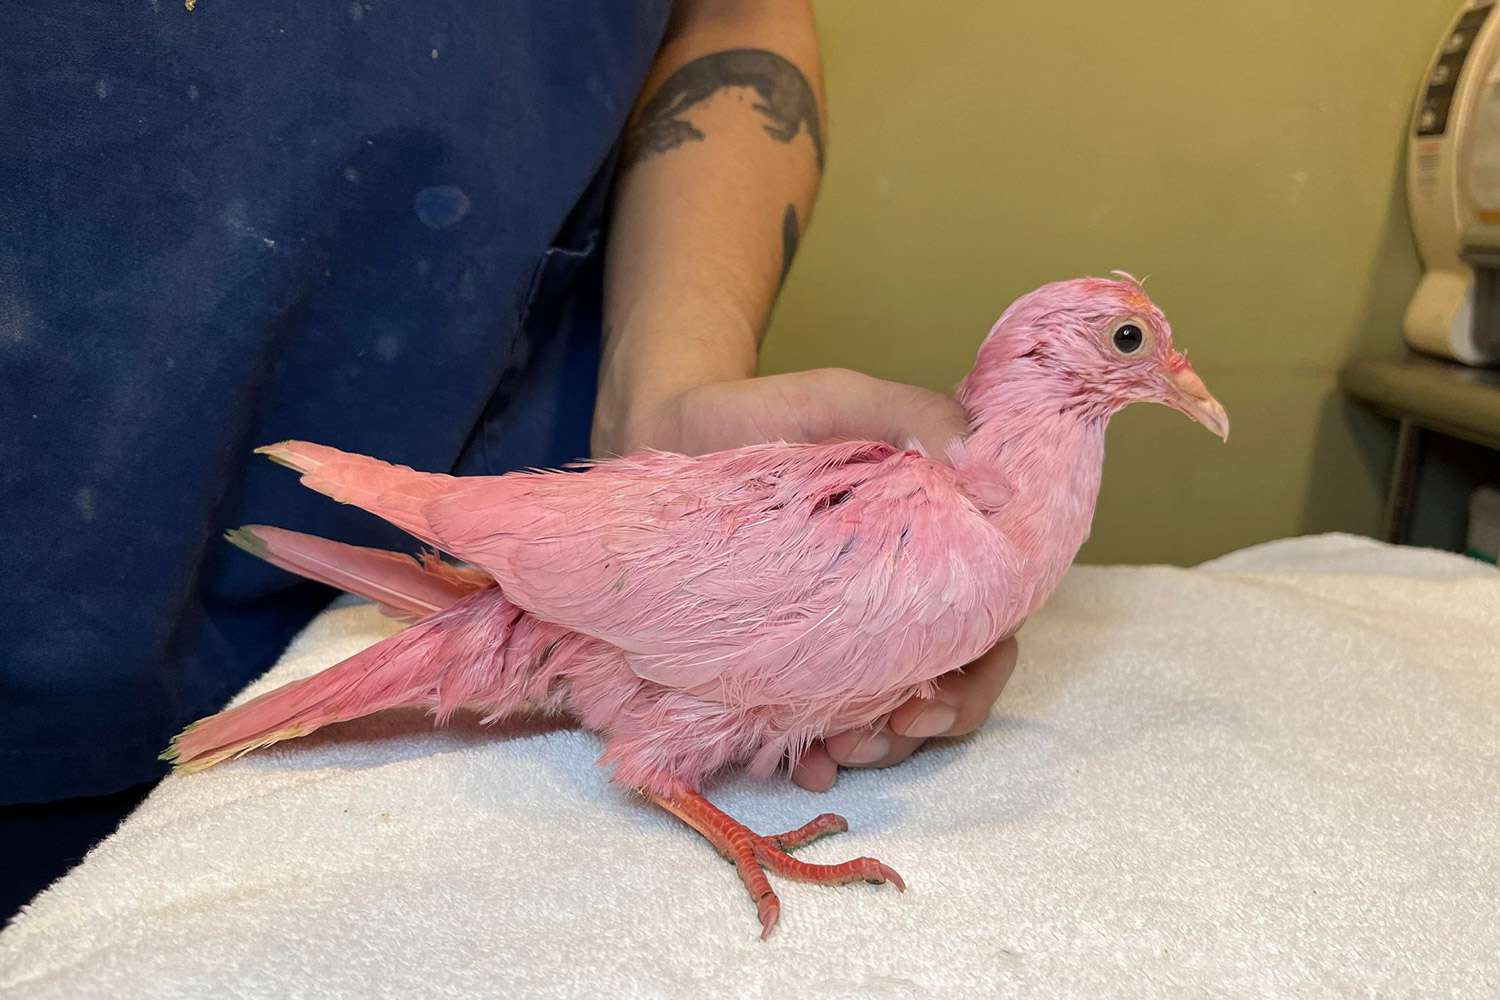 Resgate de animais adverte 'Nunca pinte um pássaro' depois que pombo rosa 'lutante' é encontrado vagando por Nova York